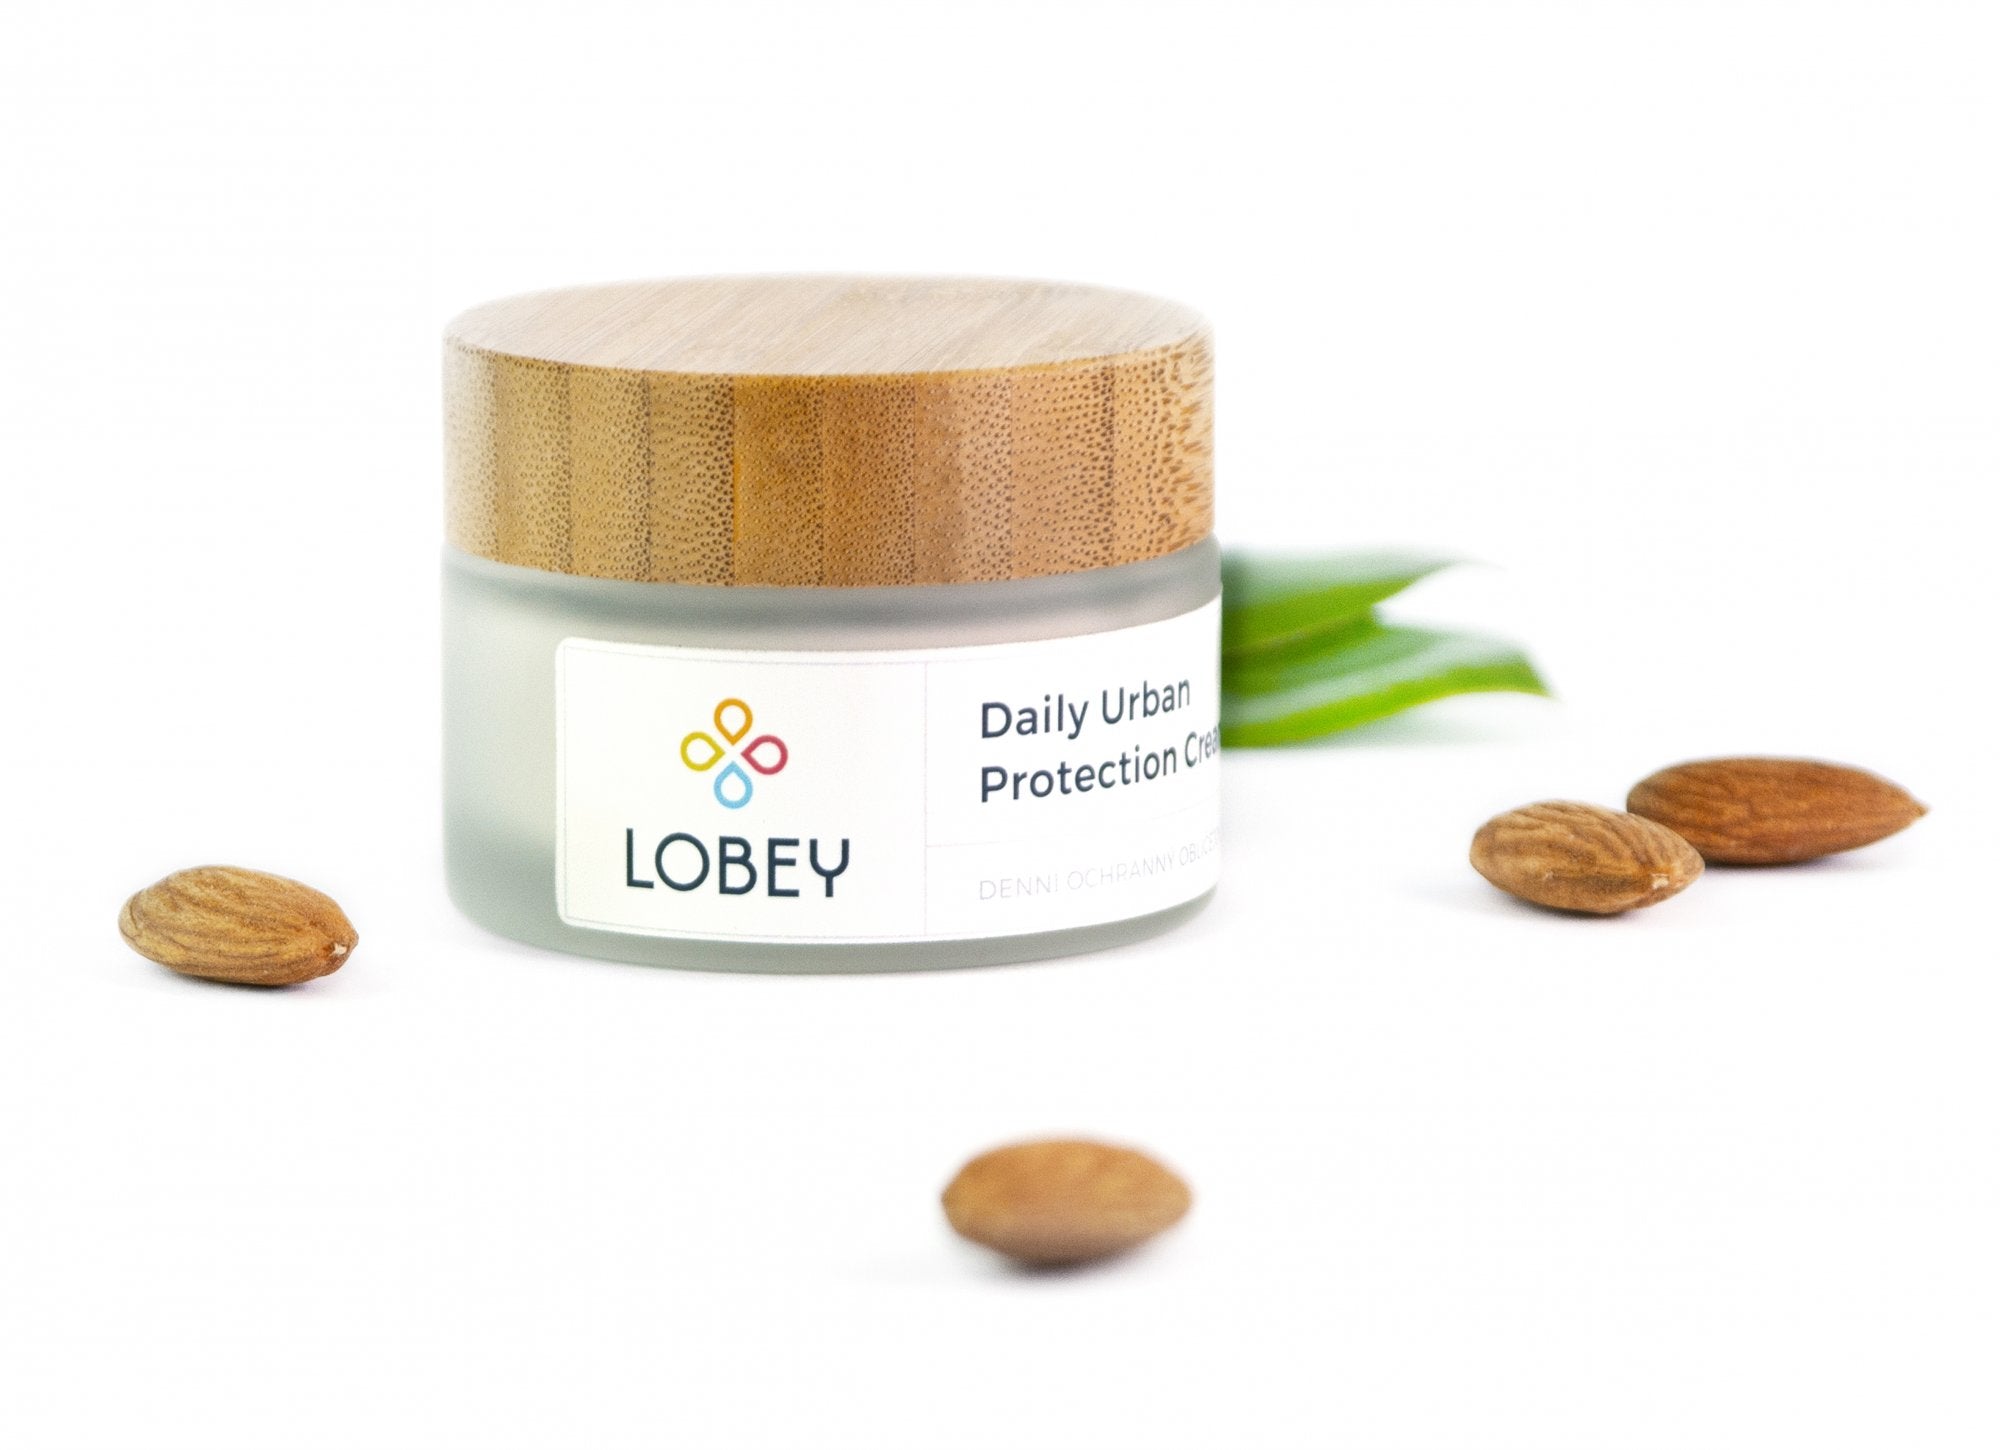 Lobey Denní ochranný krém BIO (50 ml) - viditelný účinek díky aktivním složkám Lobey